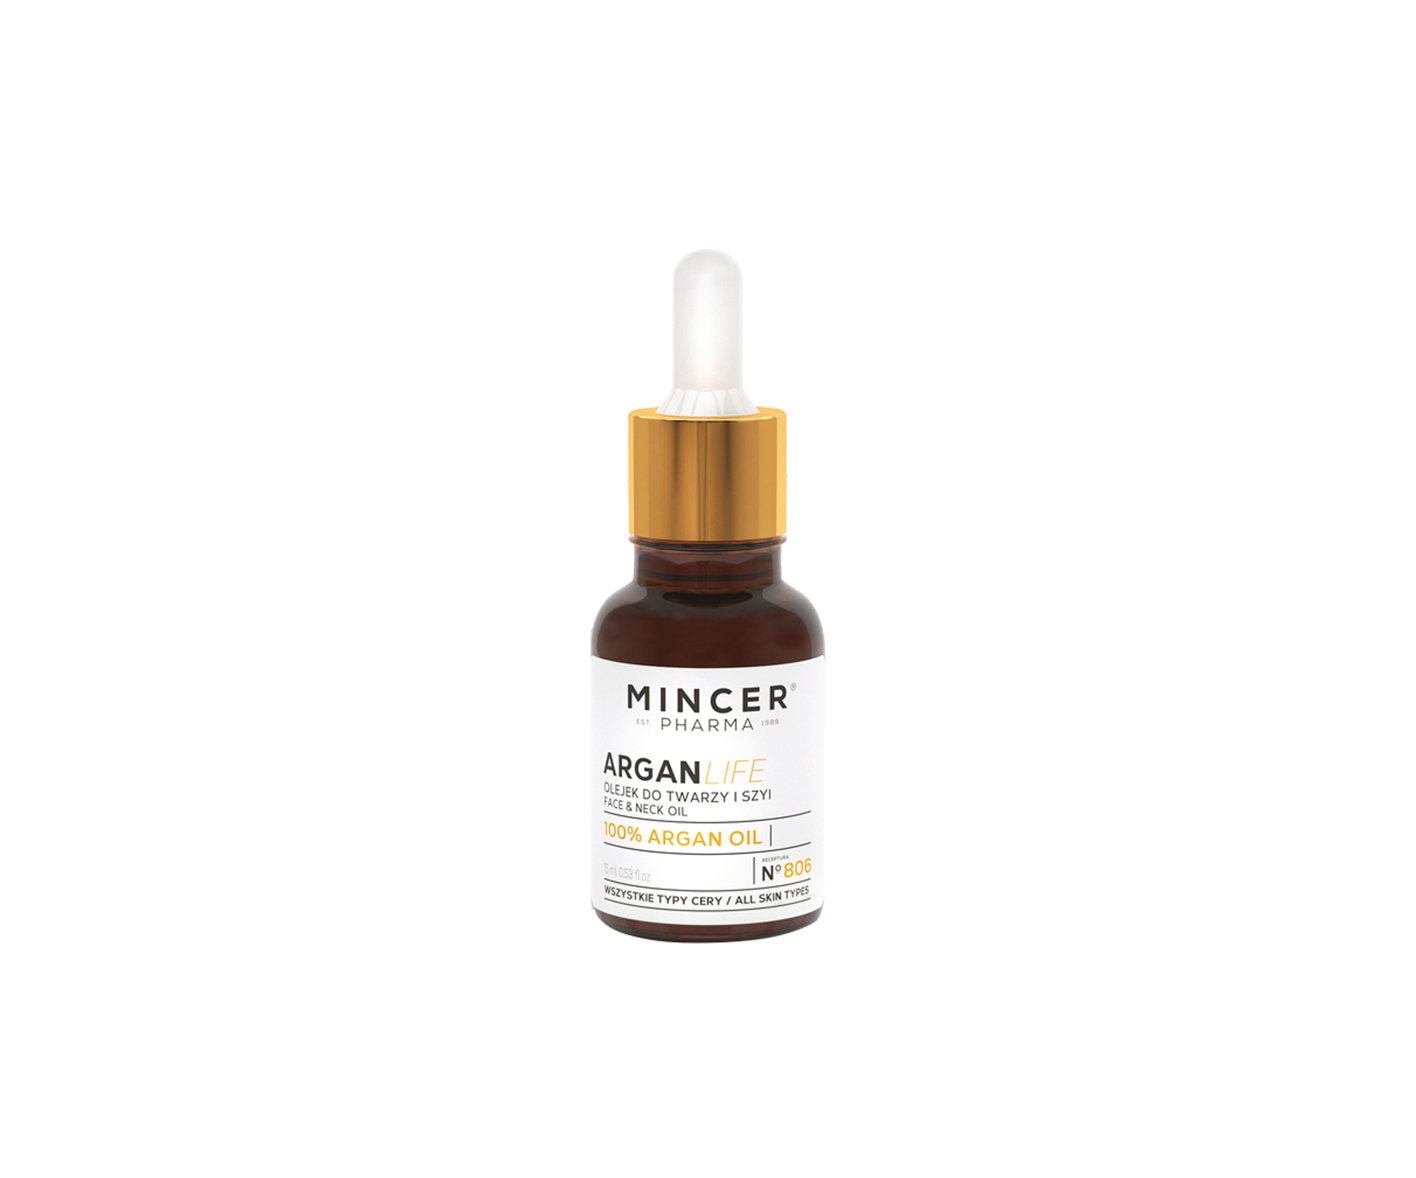 Mincer Pharma, Argan Life, face and neck oil